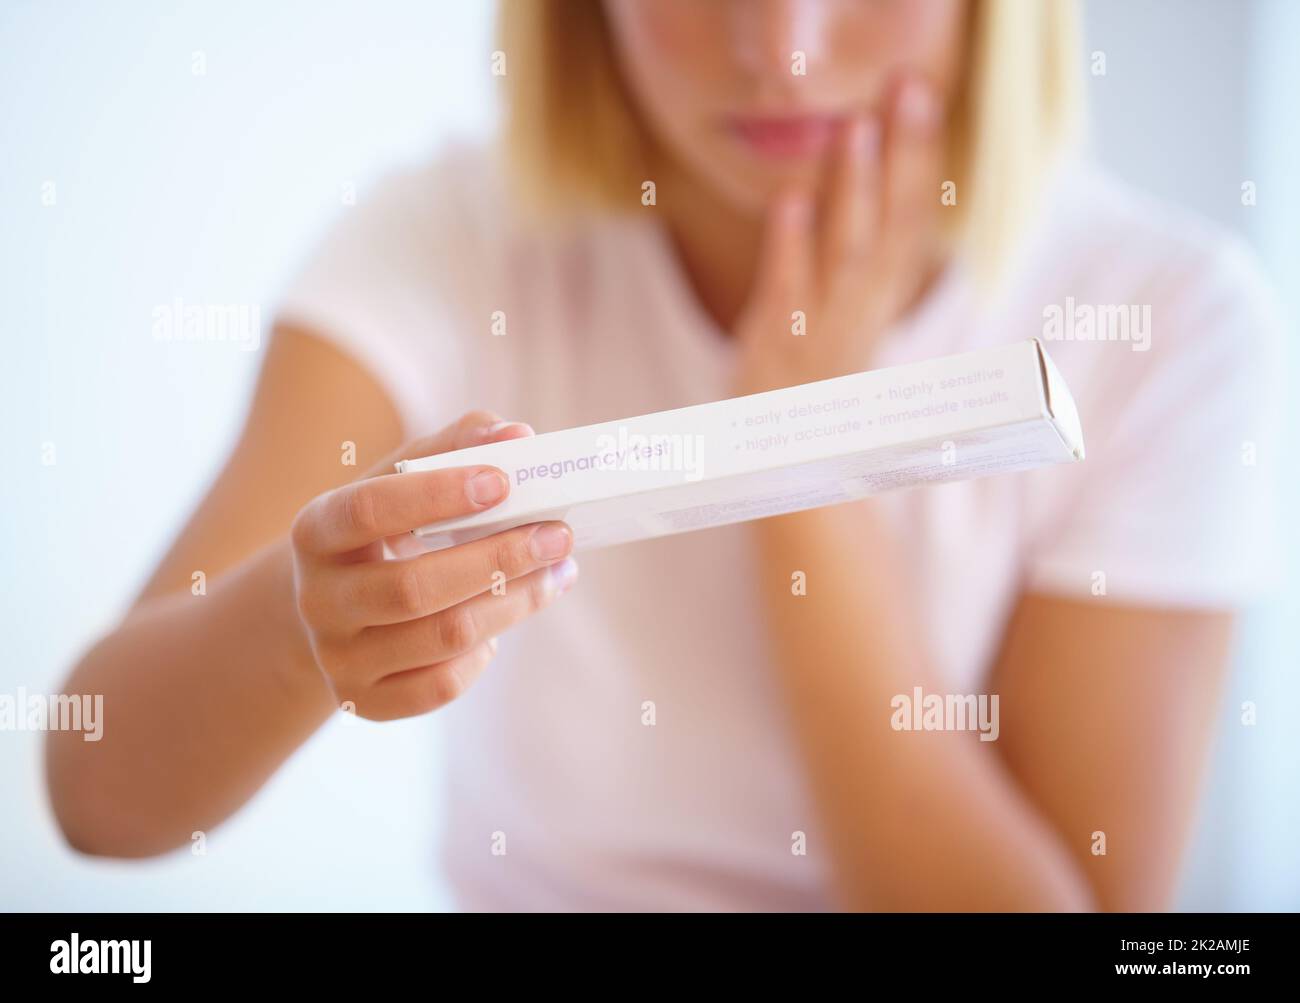 Sie muss den Test machen. Eine junge Frau, die nervös vor einem Schwangerschaftstest steht. Stockfoto